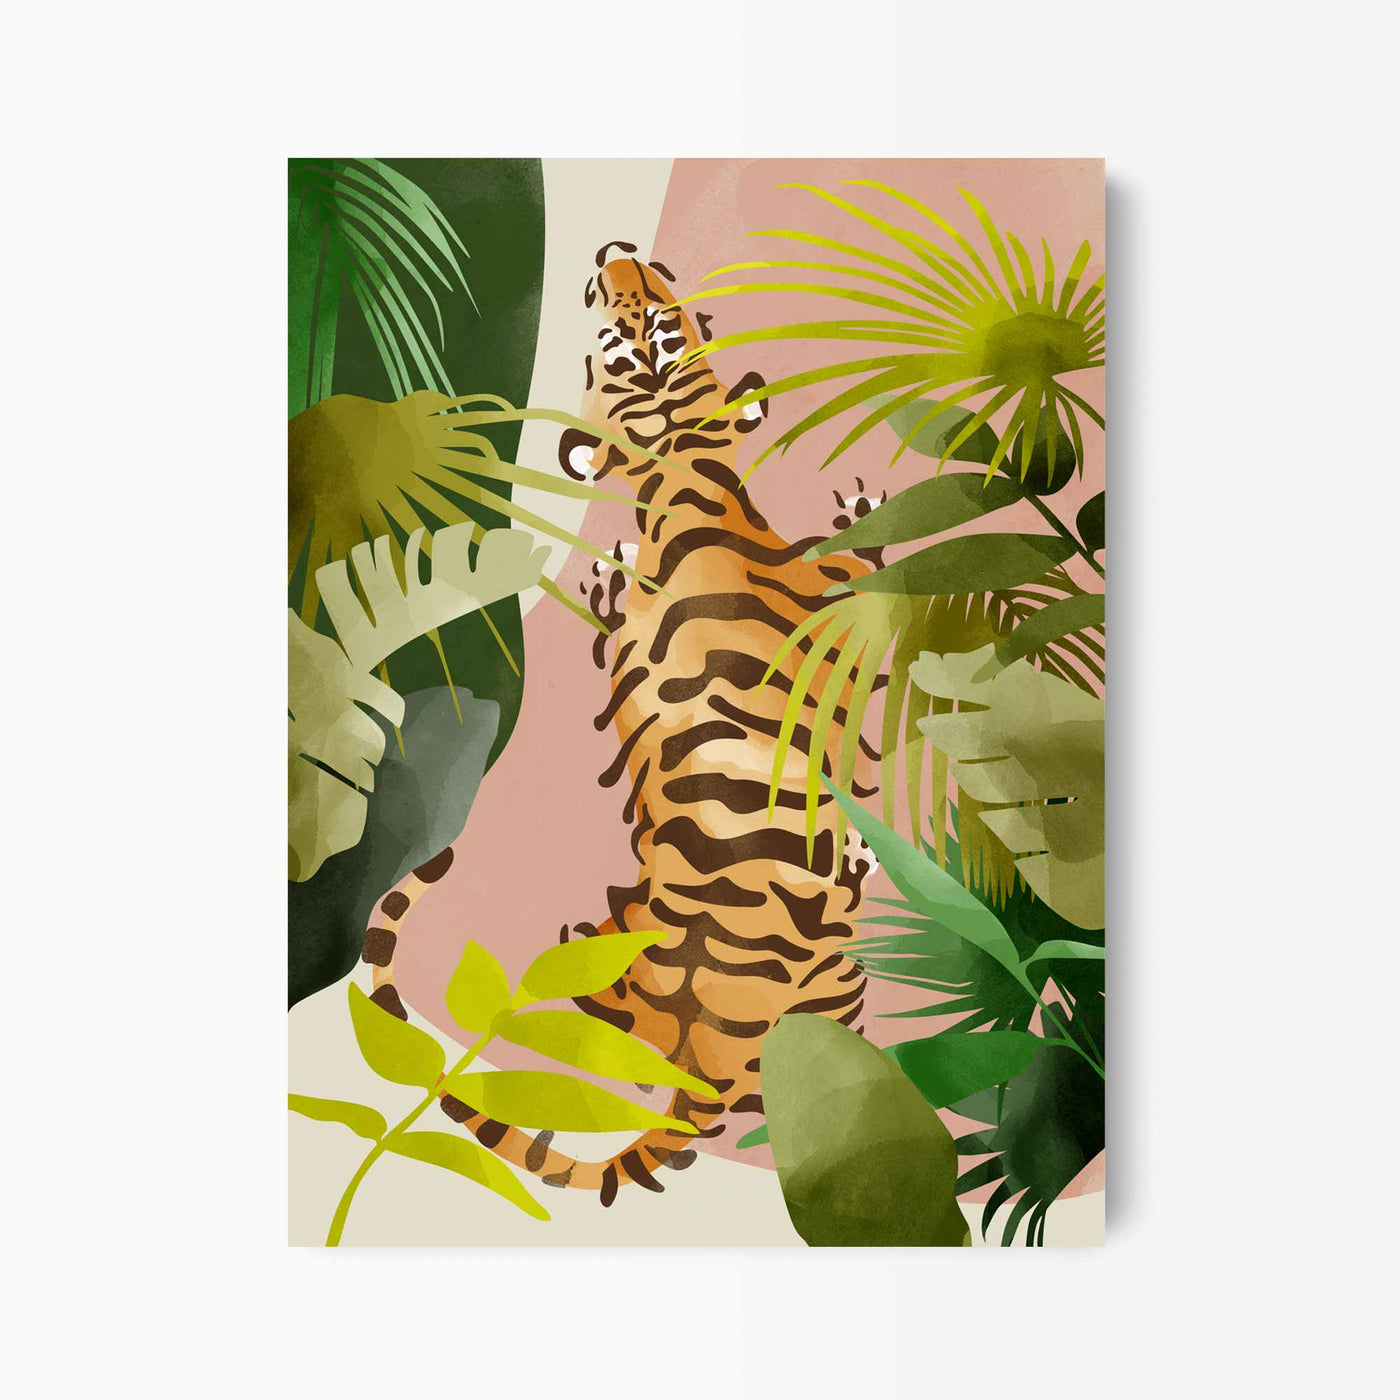 Green Lili 30x40cm (12x16") / Unframed Print Jungle Tiger Art Print